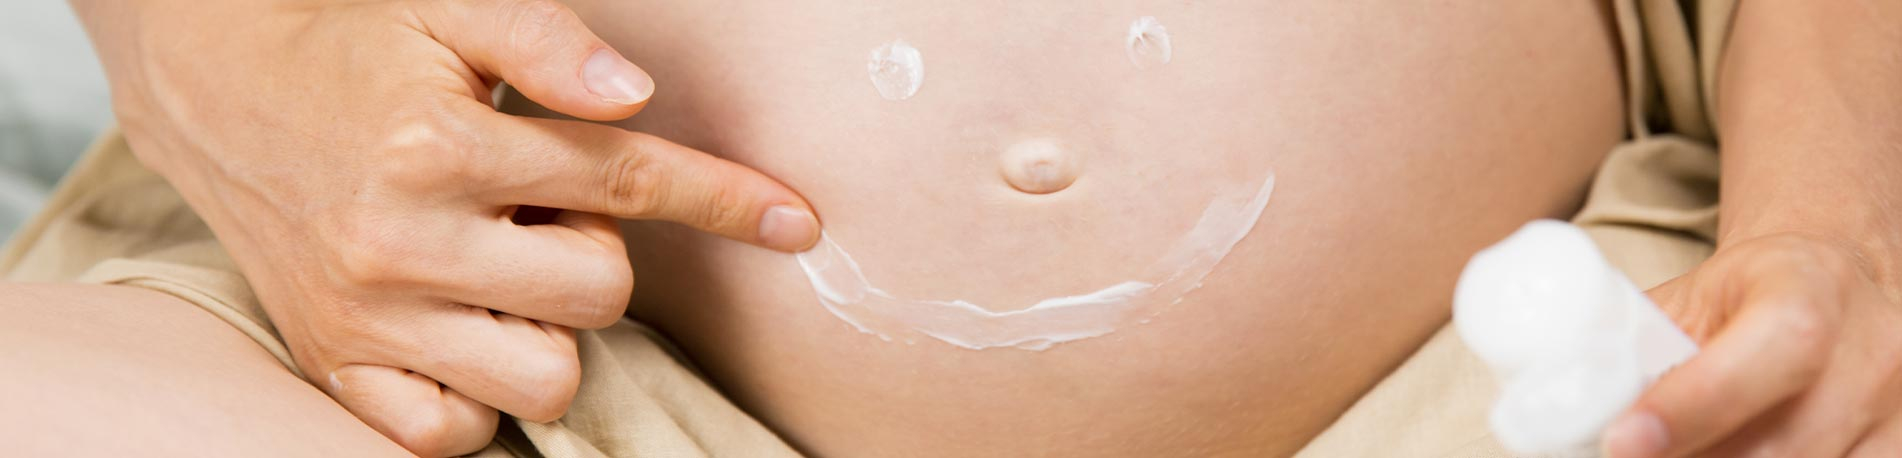 Crème vergetures grossesse pour prendre soin de la peau des femmes enceintes